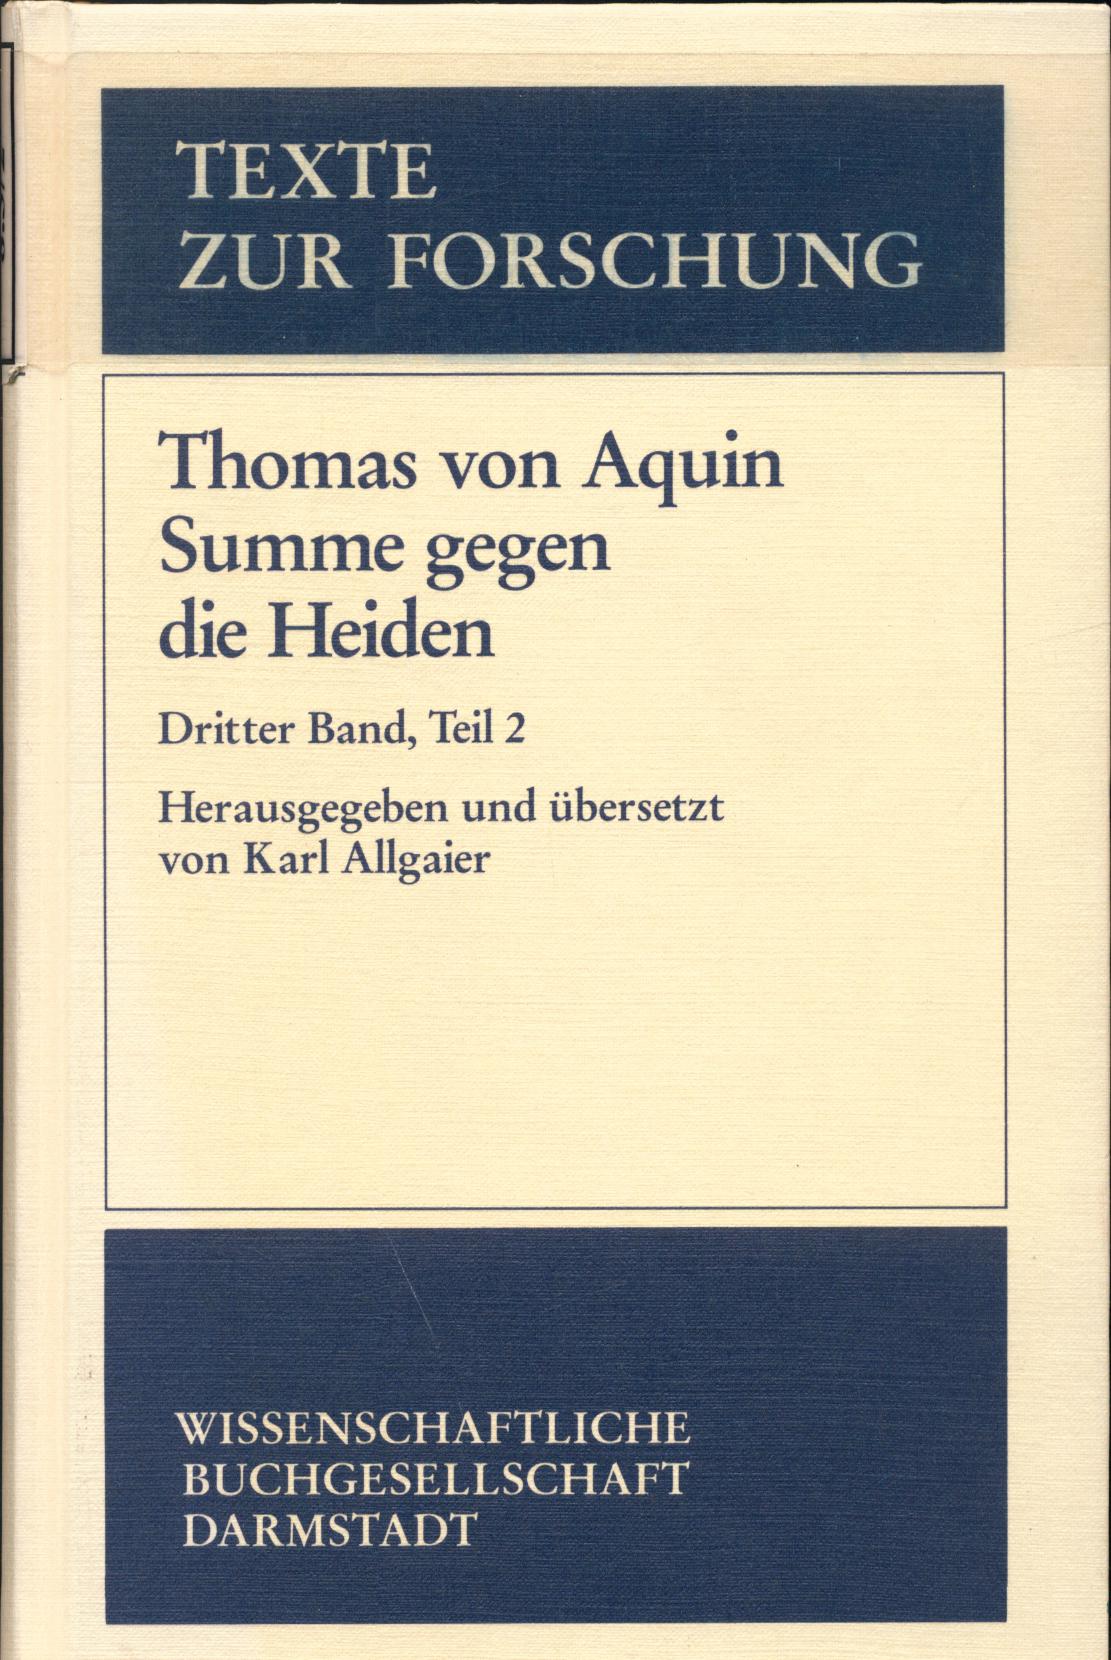 Thomas von Aquin Summe gegen die Heiden Dritter Band, Teil 2, Buch III, Kapitel 84-163 - Allgaier, Karl, Thomas von Aquin und Leo Gerken